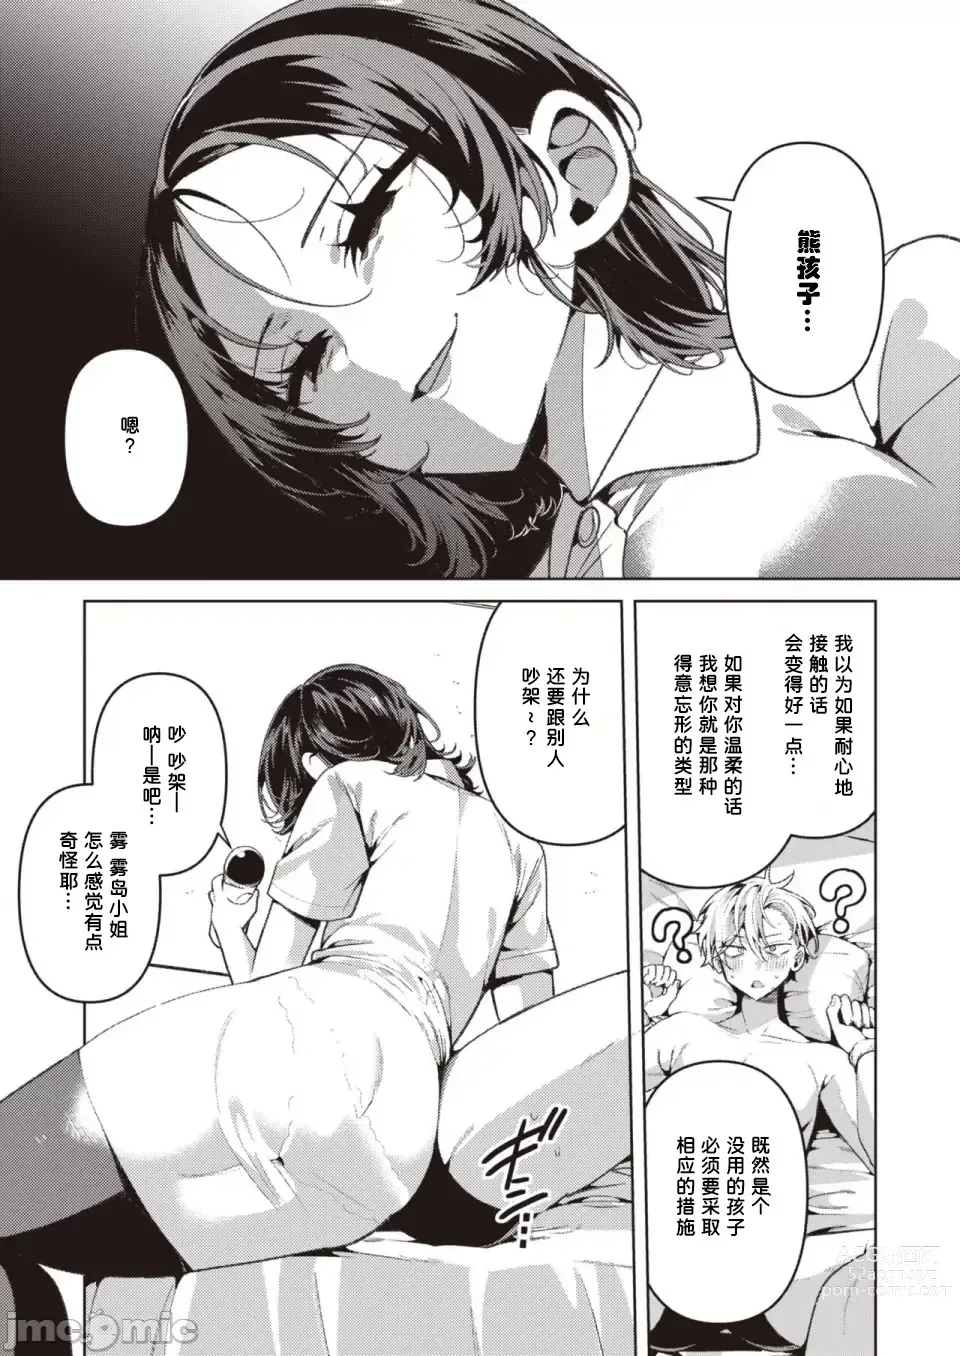 Page 9 of manga Yasashii? Nurse no Kirishima-san